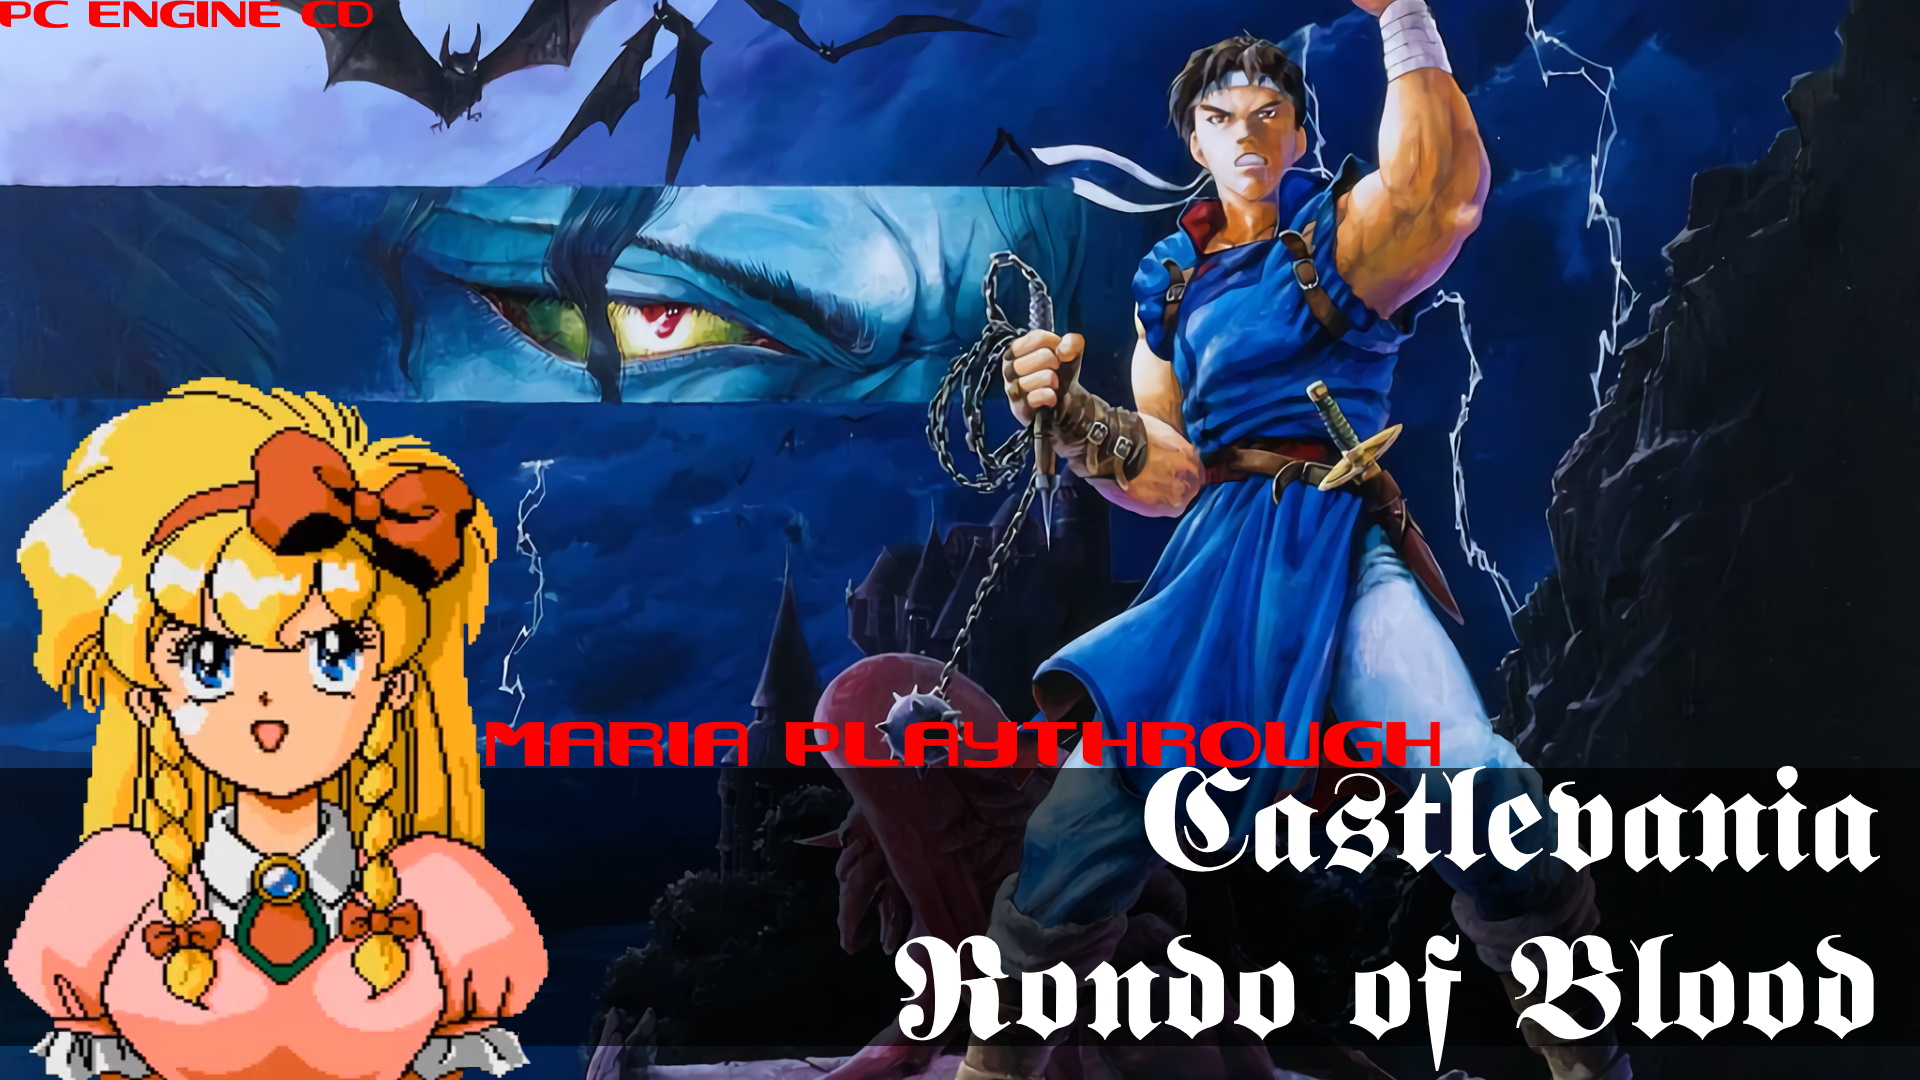 (PC Engine CD) Castlevania - Rondo of Blood (Мария) (Спасение всех девушек)